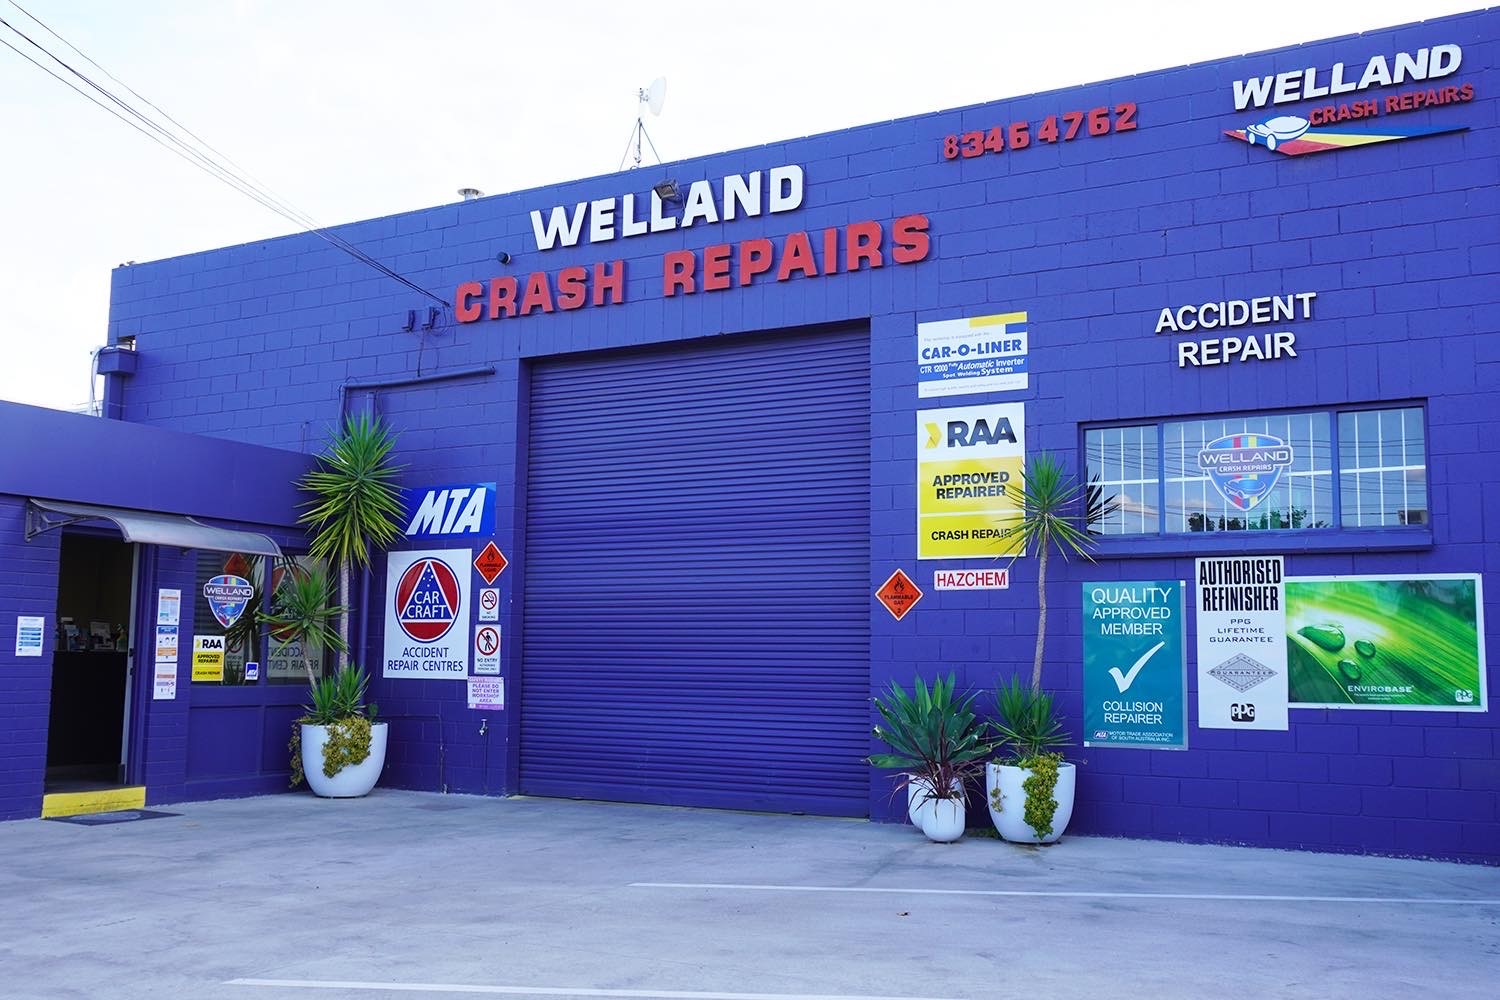 Welland Crash Repairs